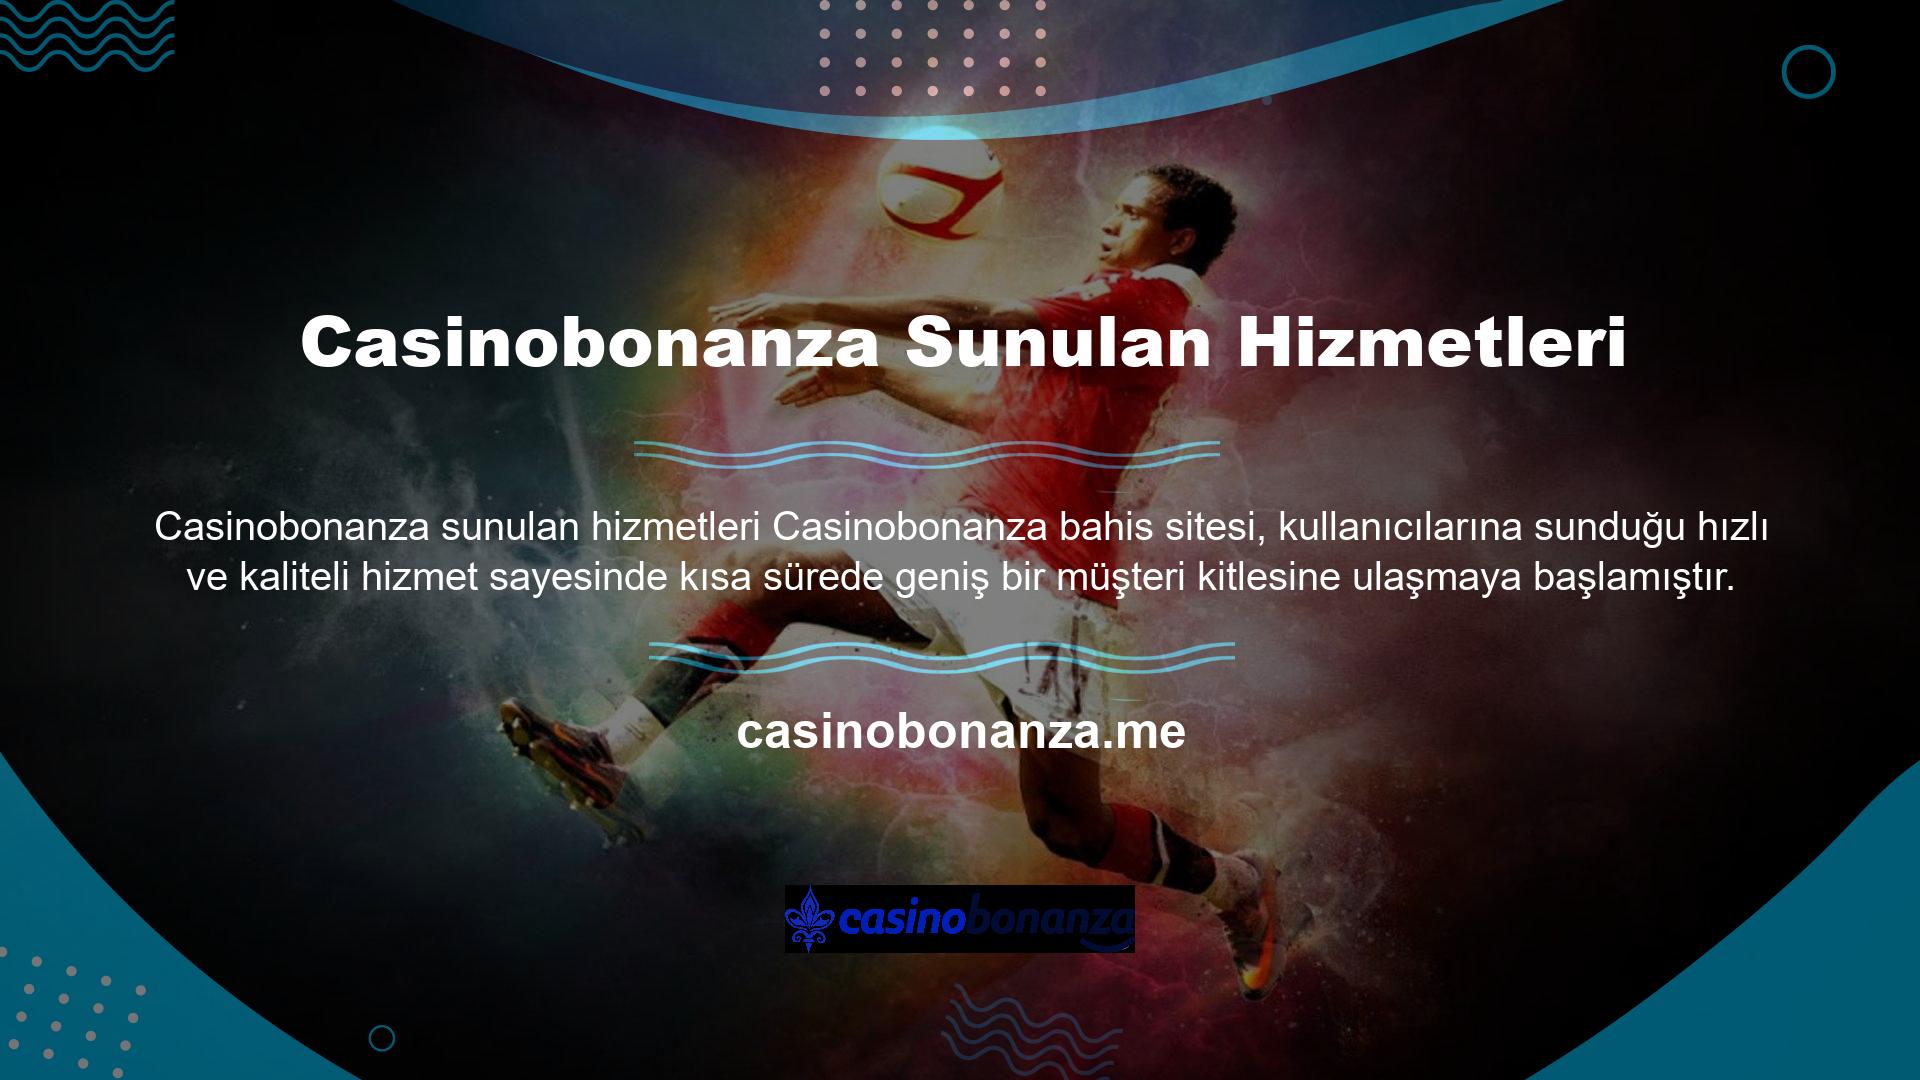 Kullanıcılarıyla iletişime büyük önem veren bahis sitesi Casinobonanza, kullanıcılarına birçok platform üzerinden destek vermekte ve sorunlarına çözüm aramaktadır